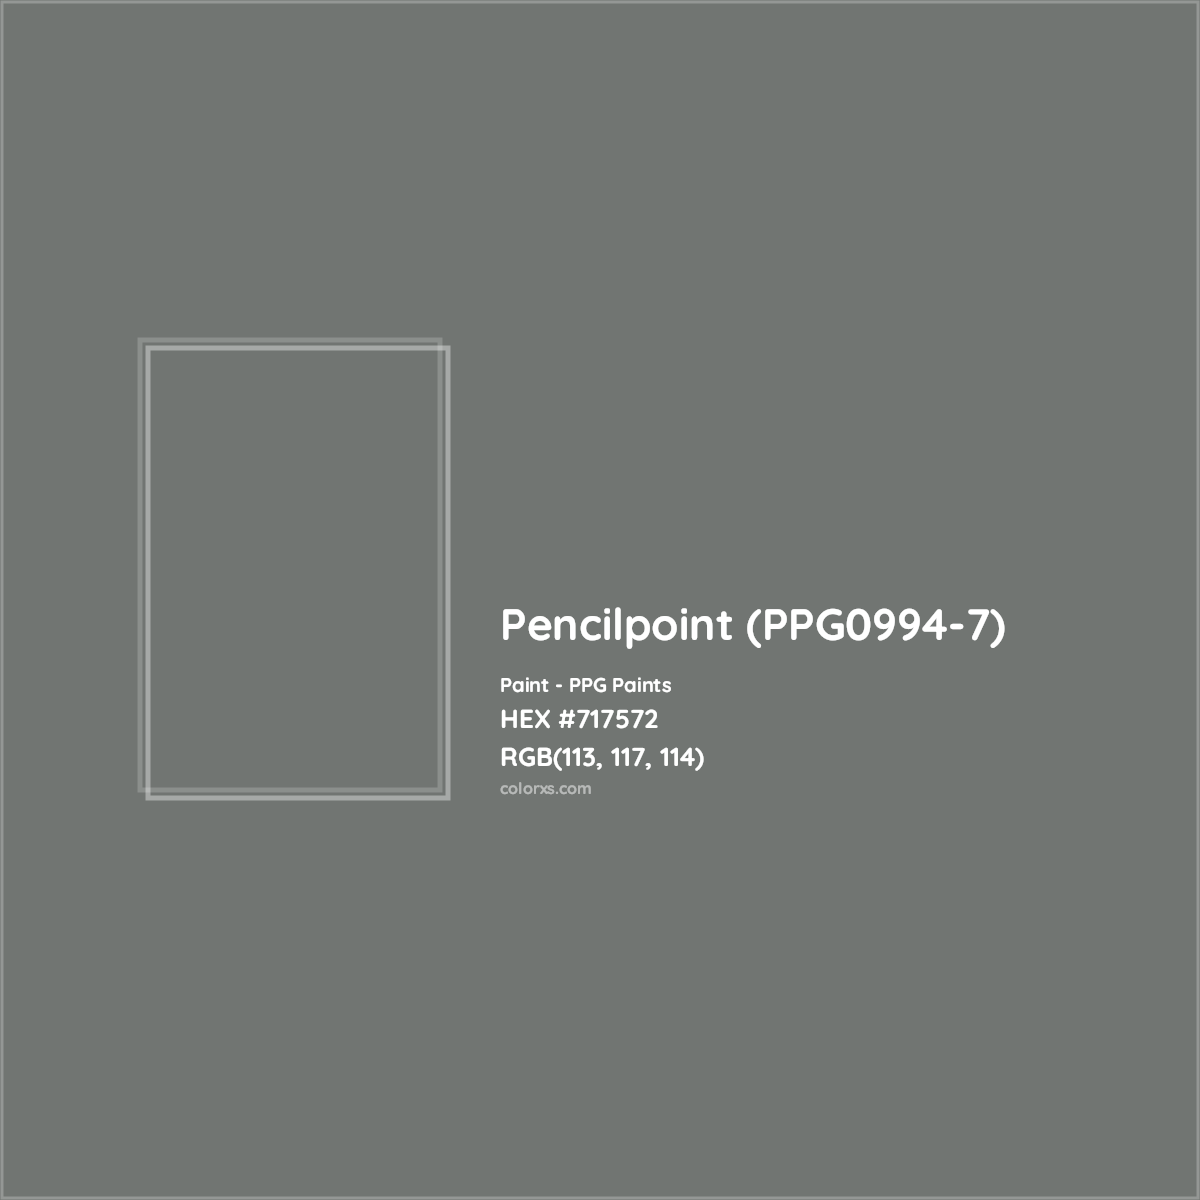 HEX #717572 Pencilpoint (PPG0994-7) Paint PPG Paints - Color Code